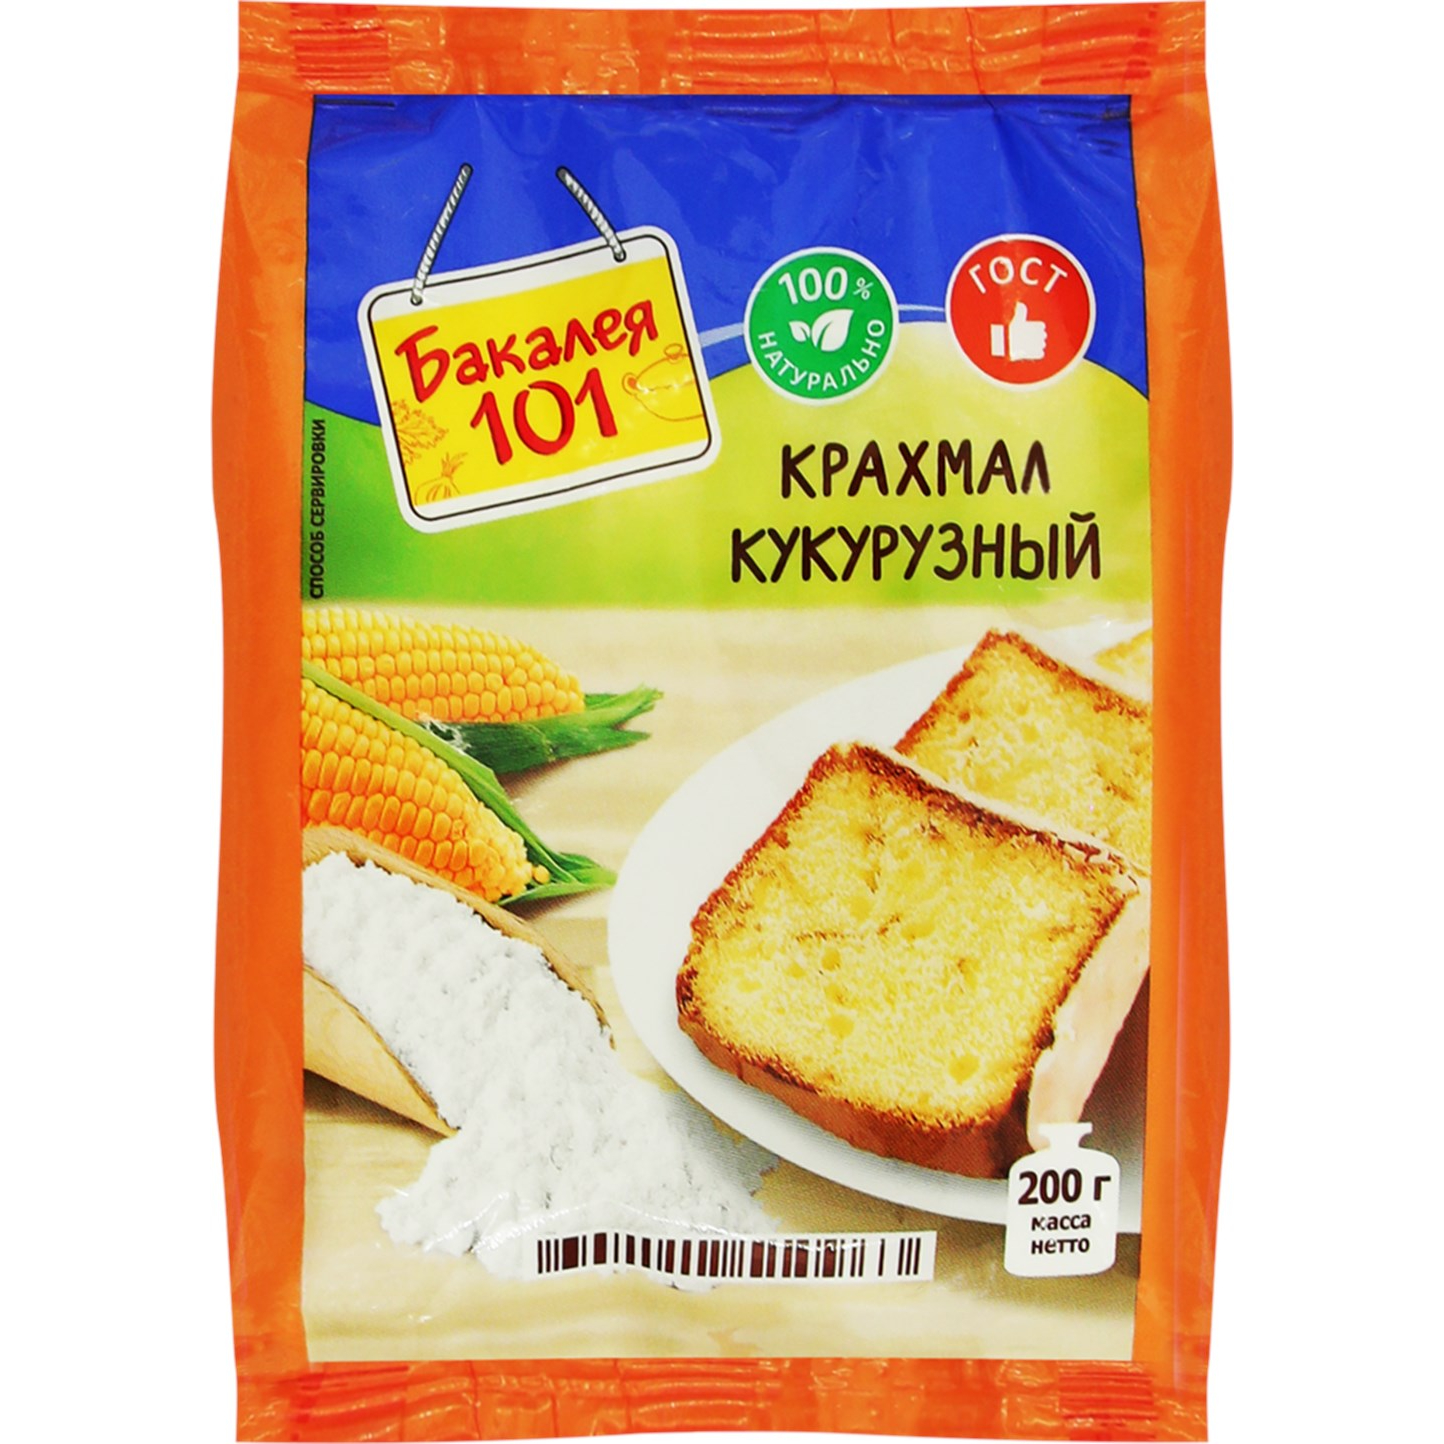 Крахмал кукурузный Русский продукт Бакалея 101 200 г